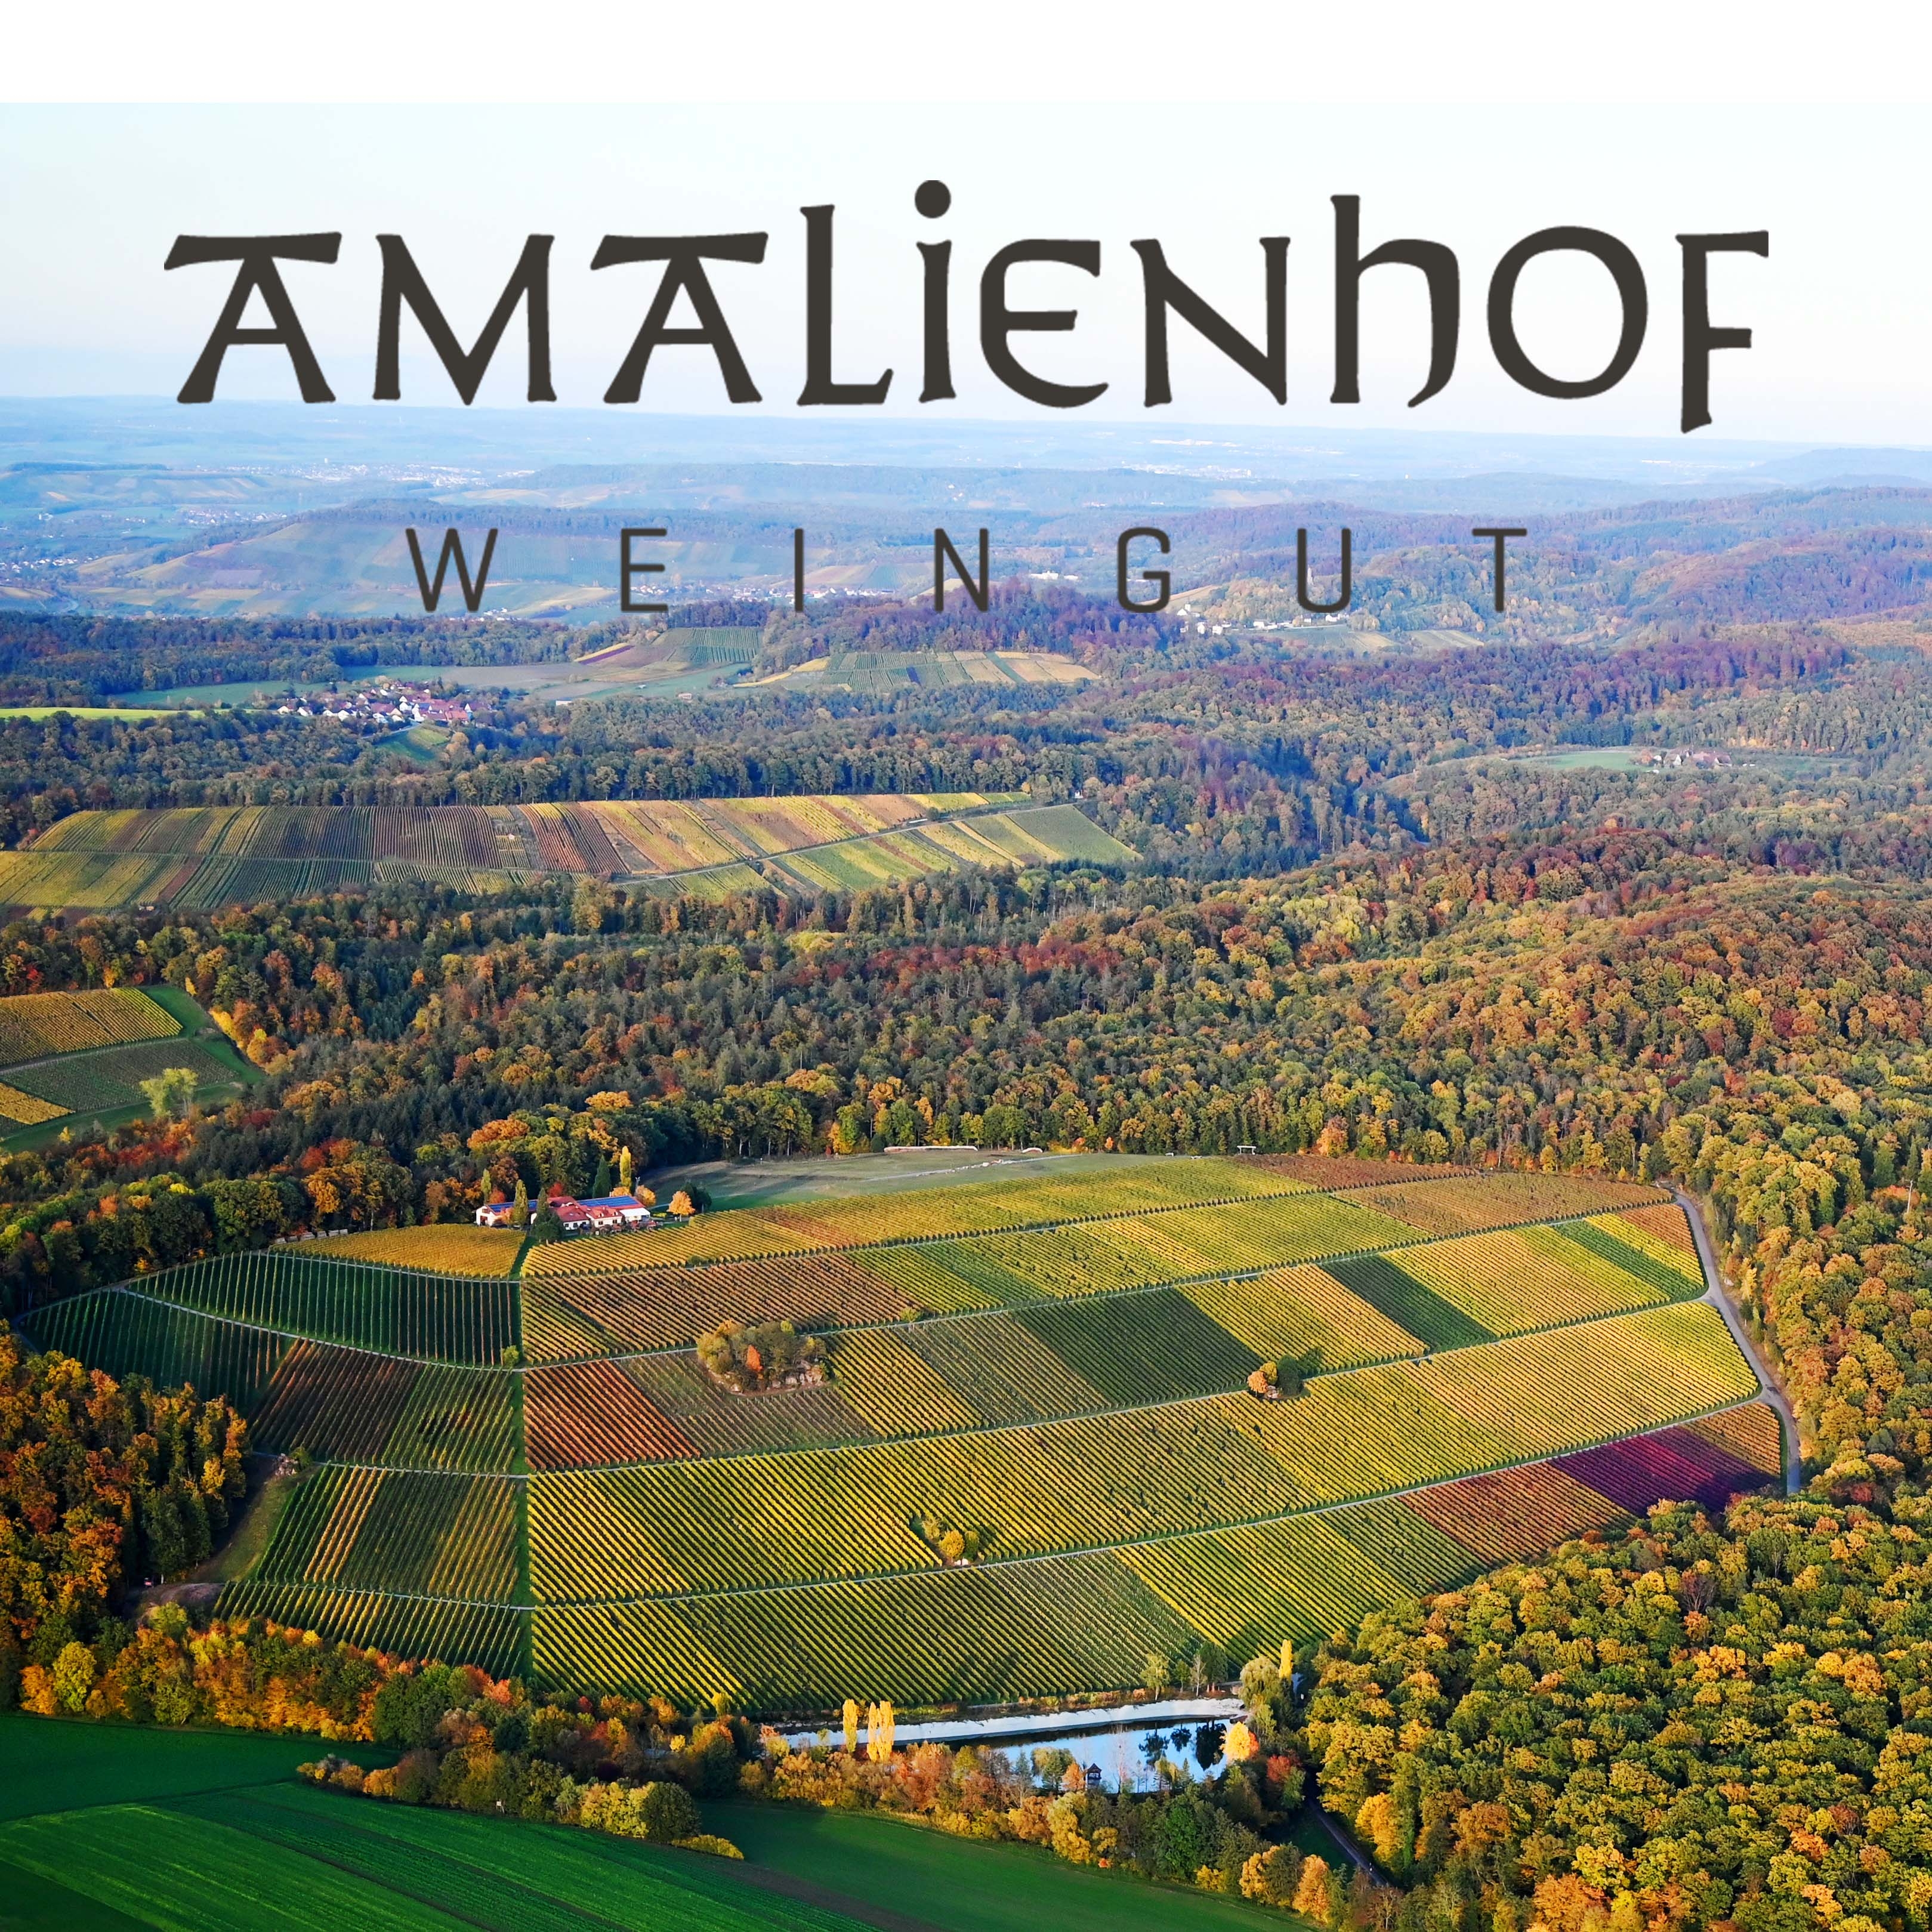 Weingut Amalienhof